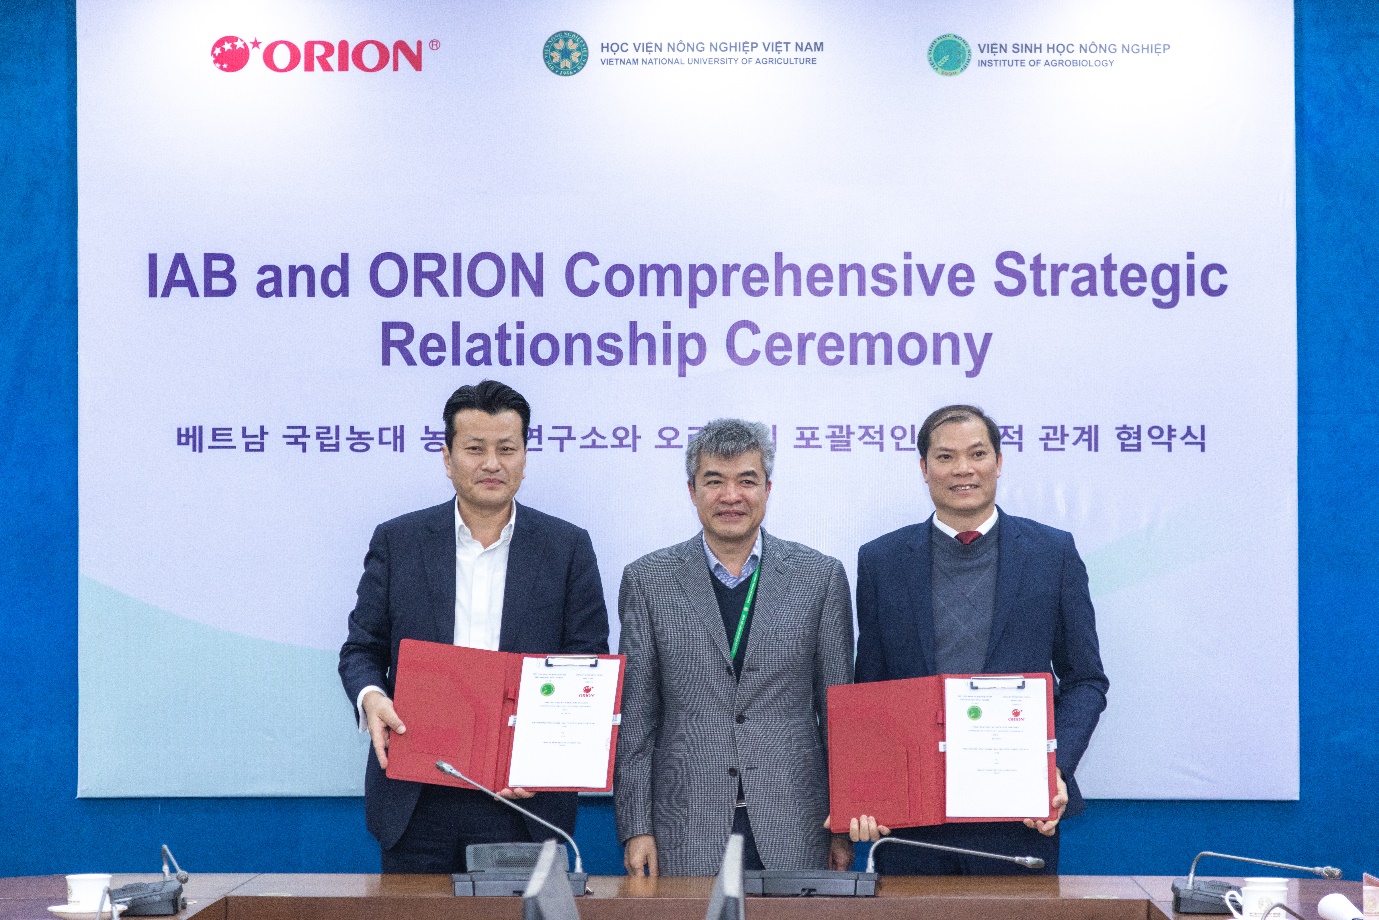 Viện Sinh học Nông nghiệp ký hợp tác với Orion, hỗ trợ nông dân trồng khoai tây để làm ra món nhiều người mê- Ảnh 1.